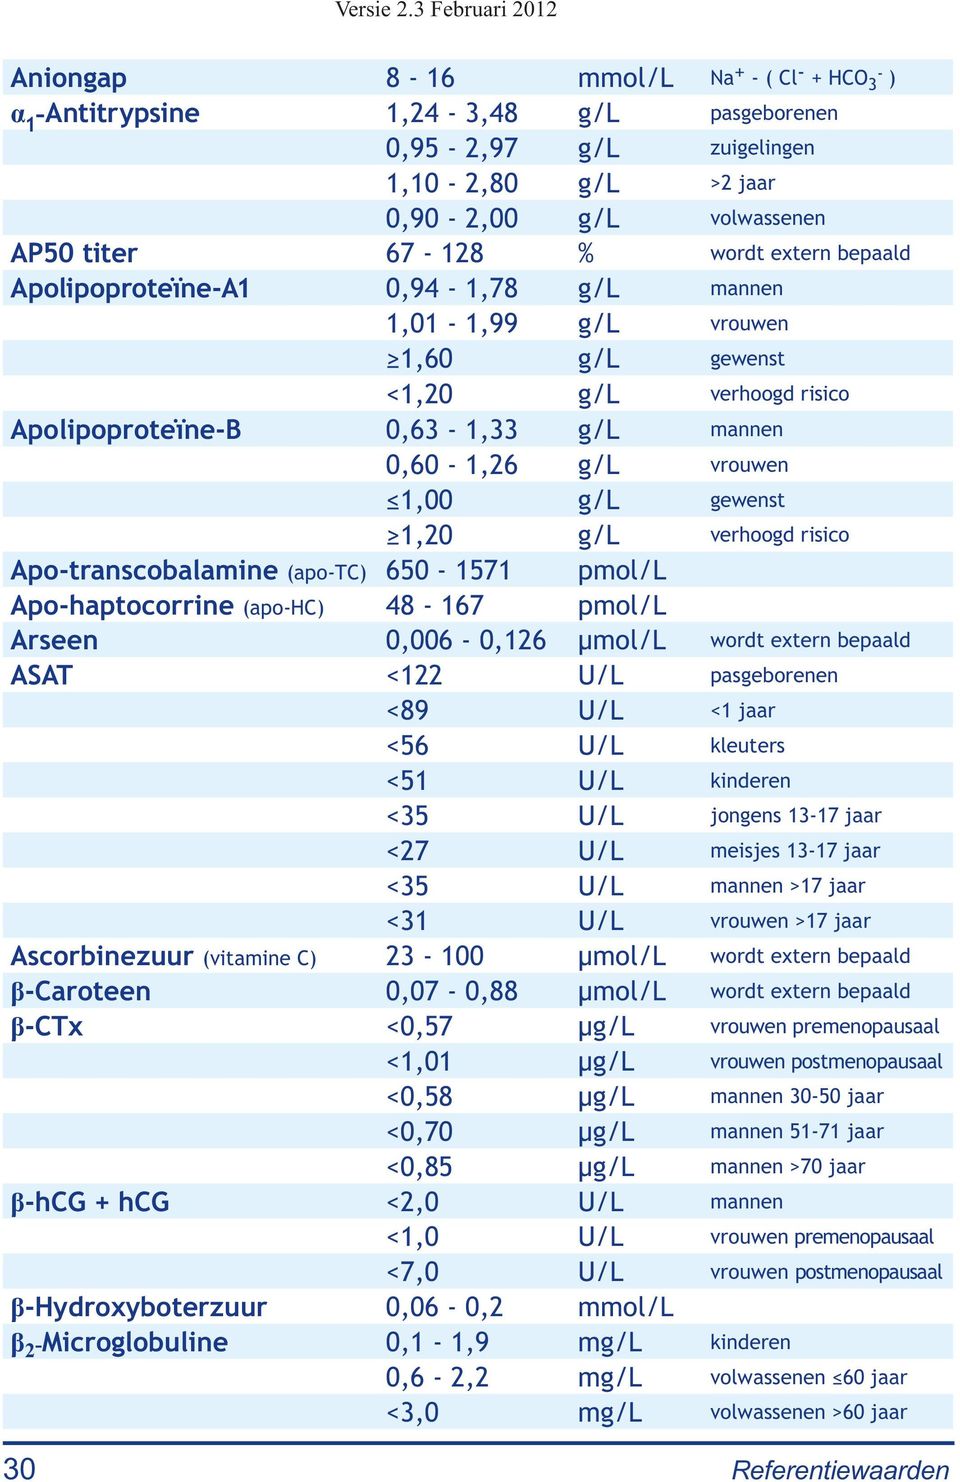 verhoogd risico Apo-transcobalamine (apo-tc) 650-1571 pmol/l Apo-haptocorrine (apo-hc) 48-167 pmol/l Arseen 0,006-0,126 μmol/l wordt extern bepaald ASAT <122 U/L pasgeborenen <89 U/L <1 jaar <56 U/L